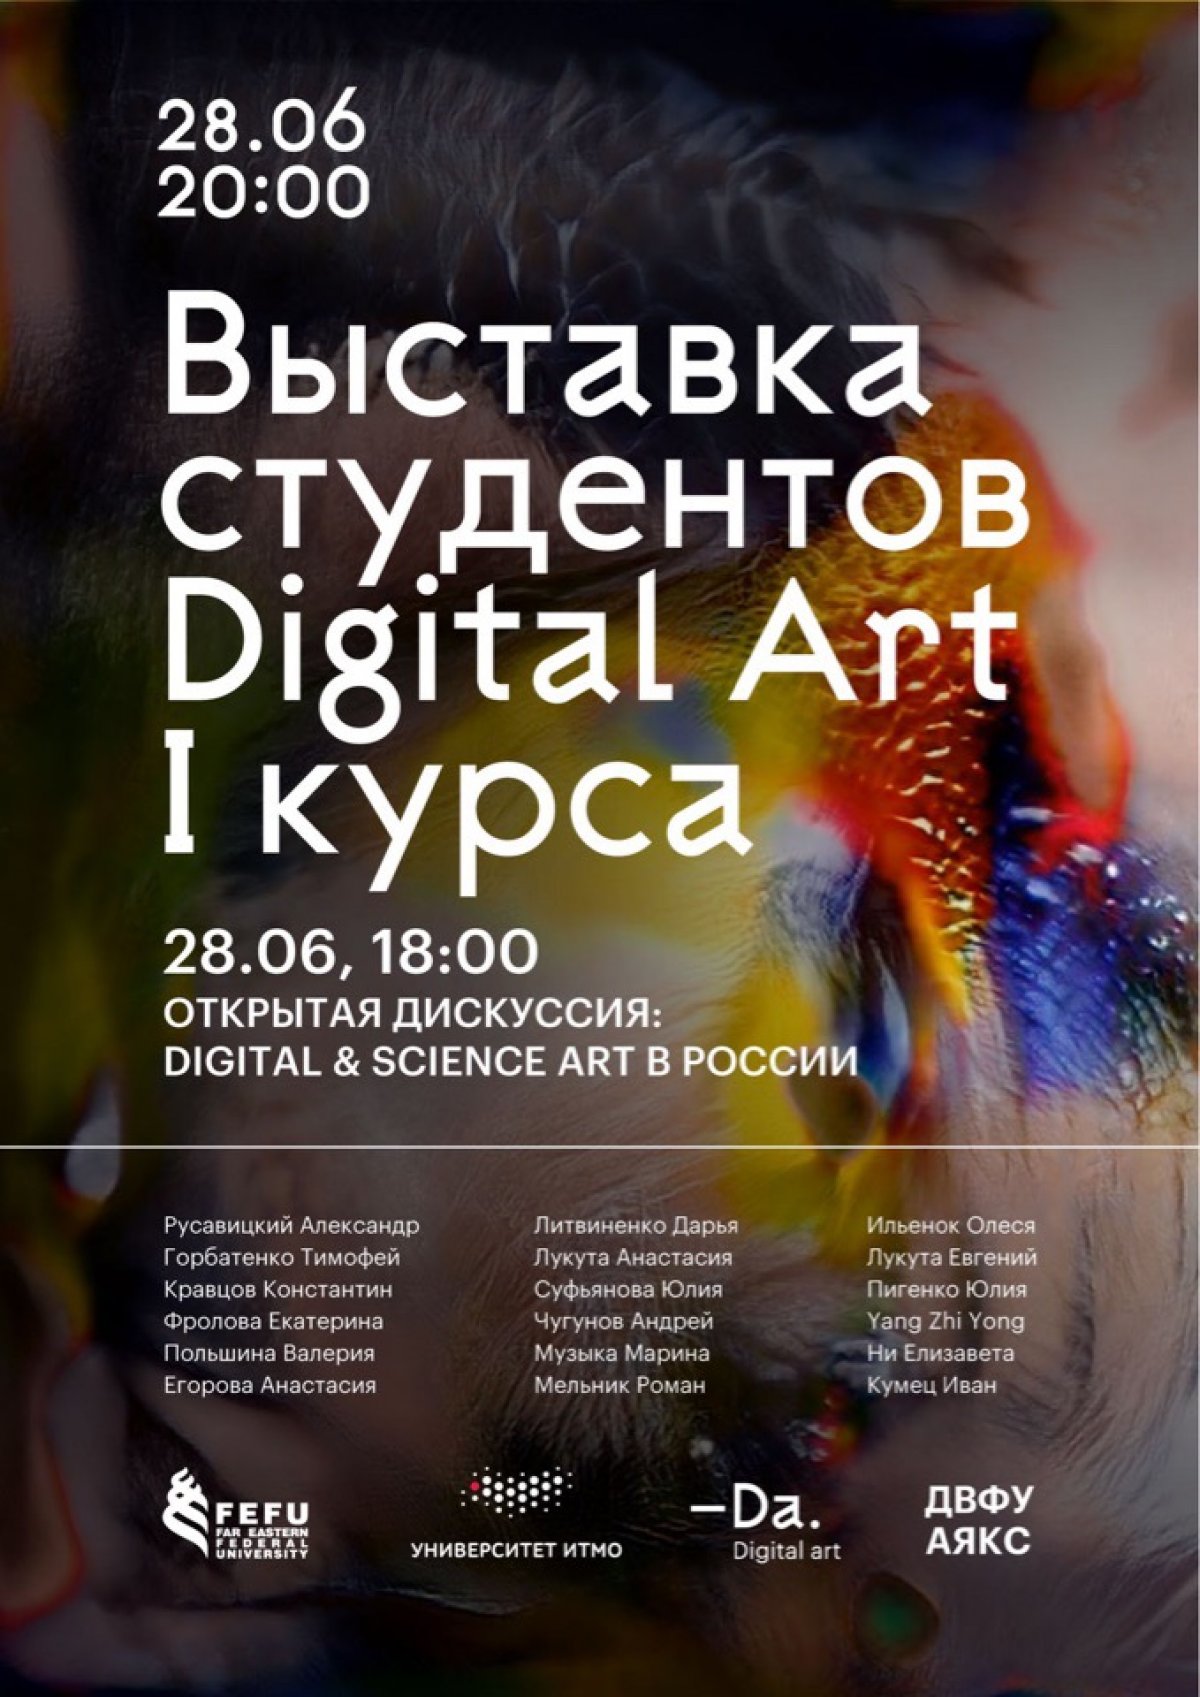 28 июня в 20:00 в коворкинге Аякс пройдет заключительная выставка студенческих работ первого набора магистратуры — Da. Digital Art